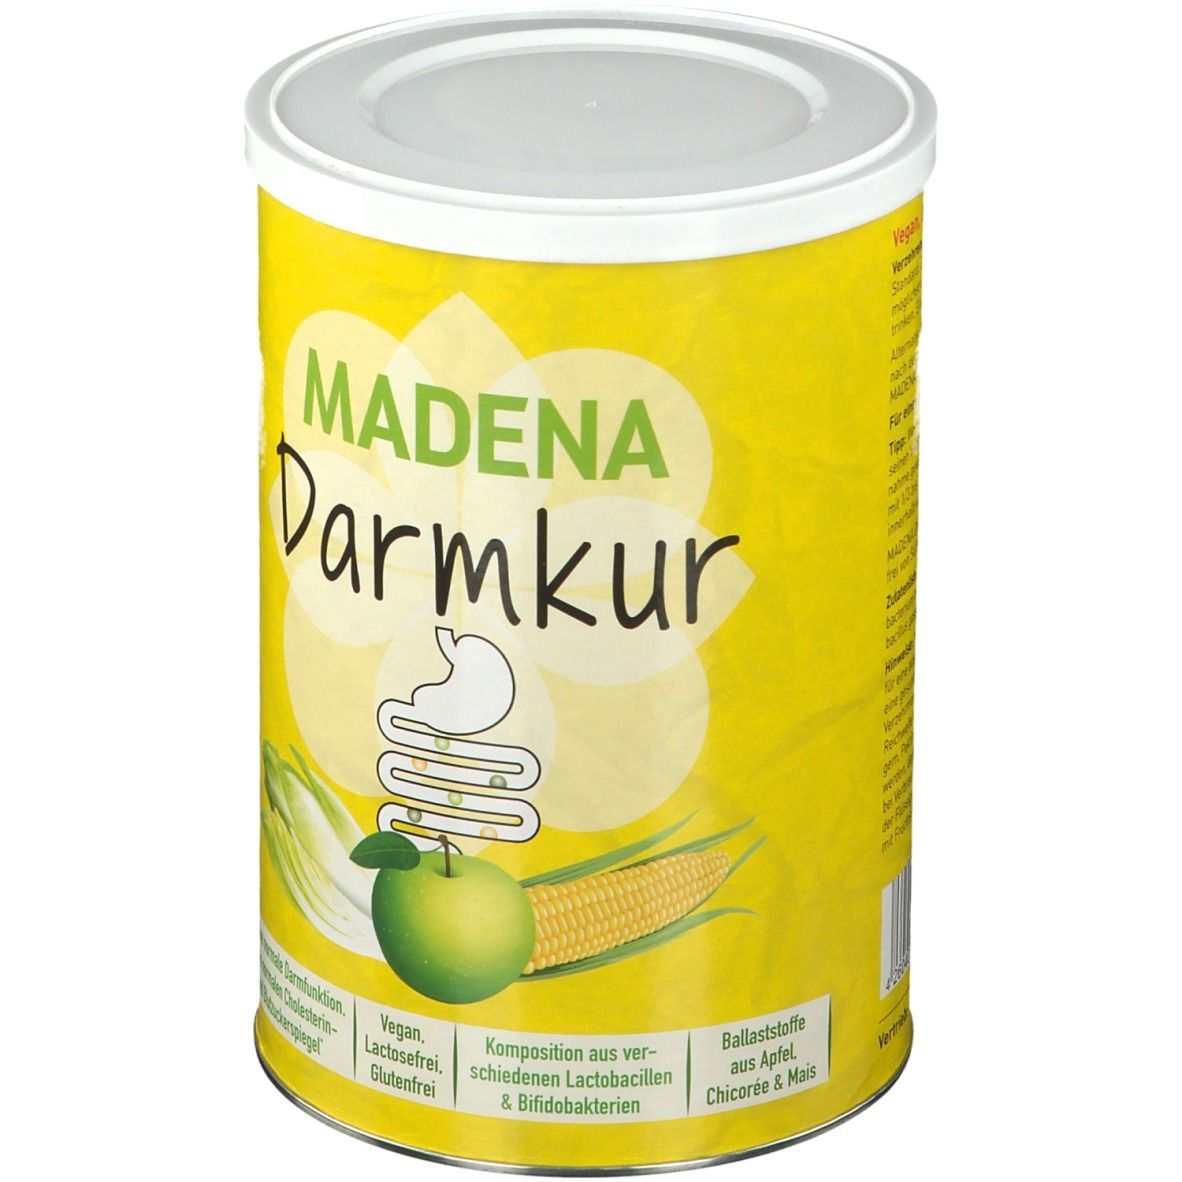 Madena Darmkur